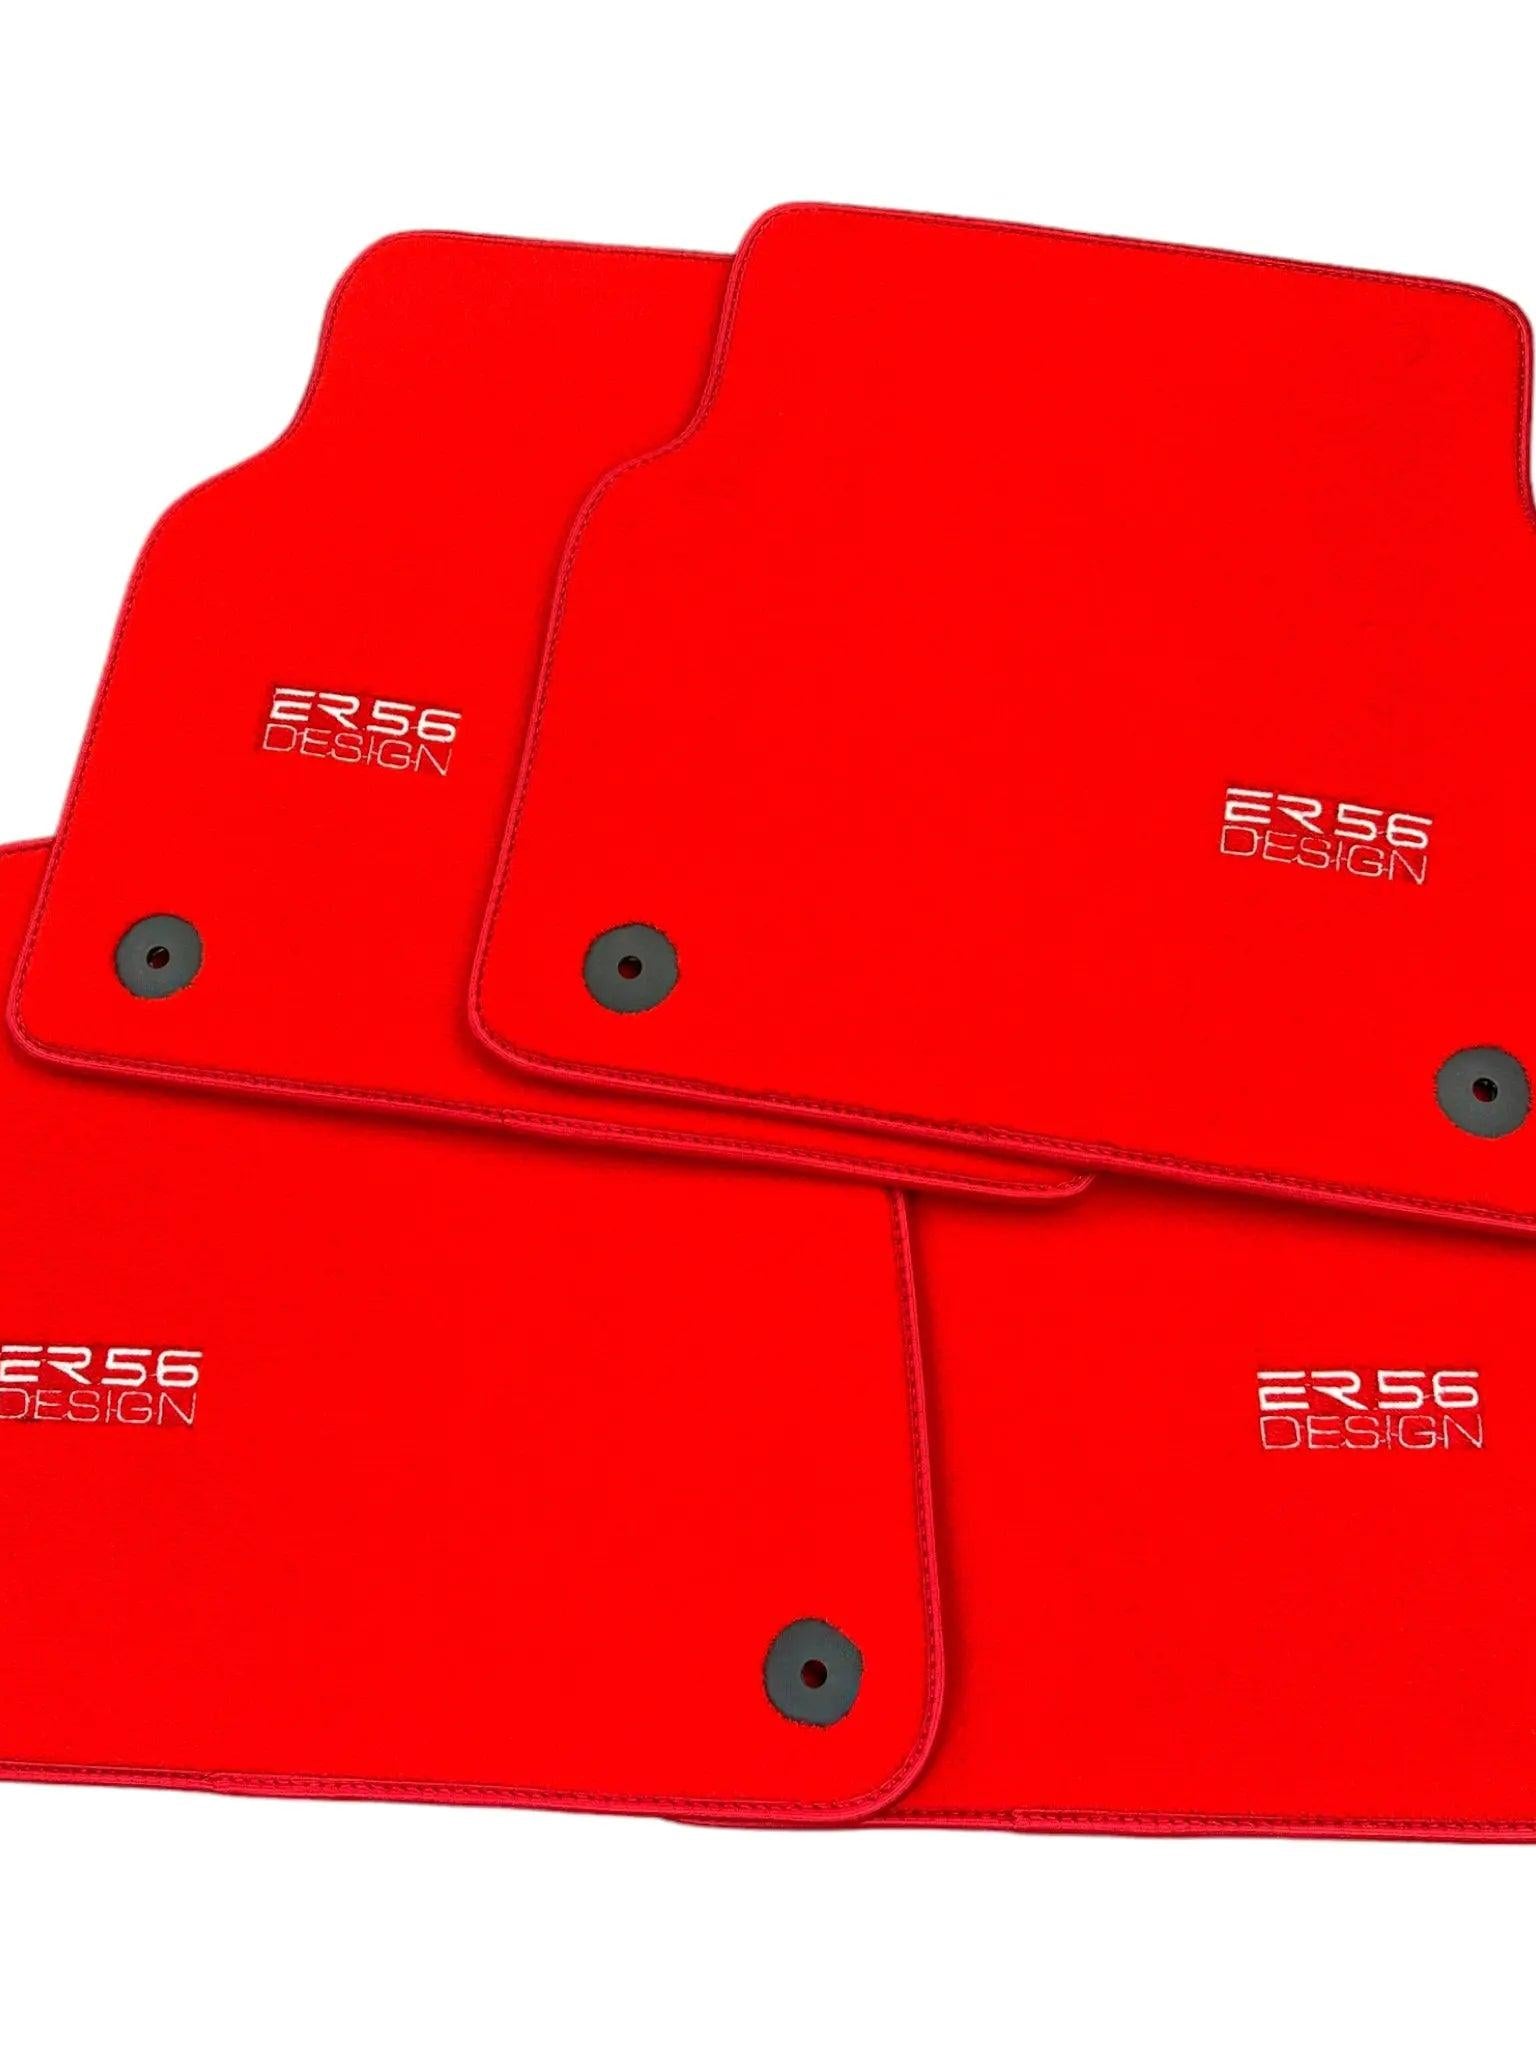 Red Floor Mats for Audi A4 - B7 Avant (2005-2008) | ER56 Design